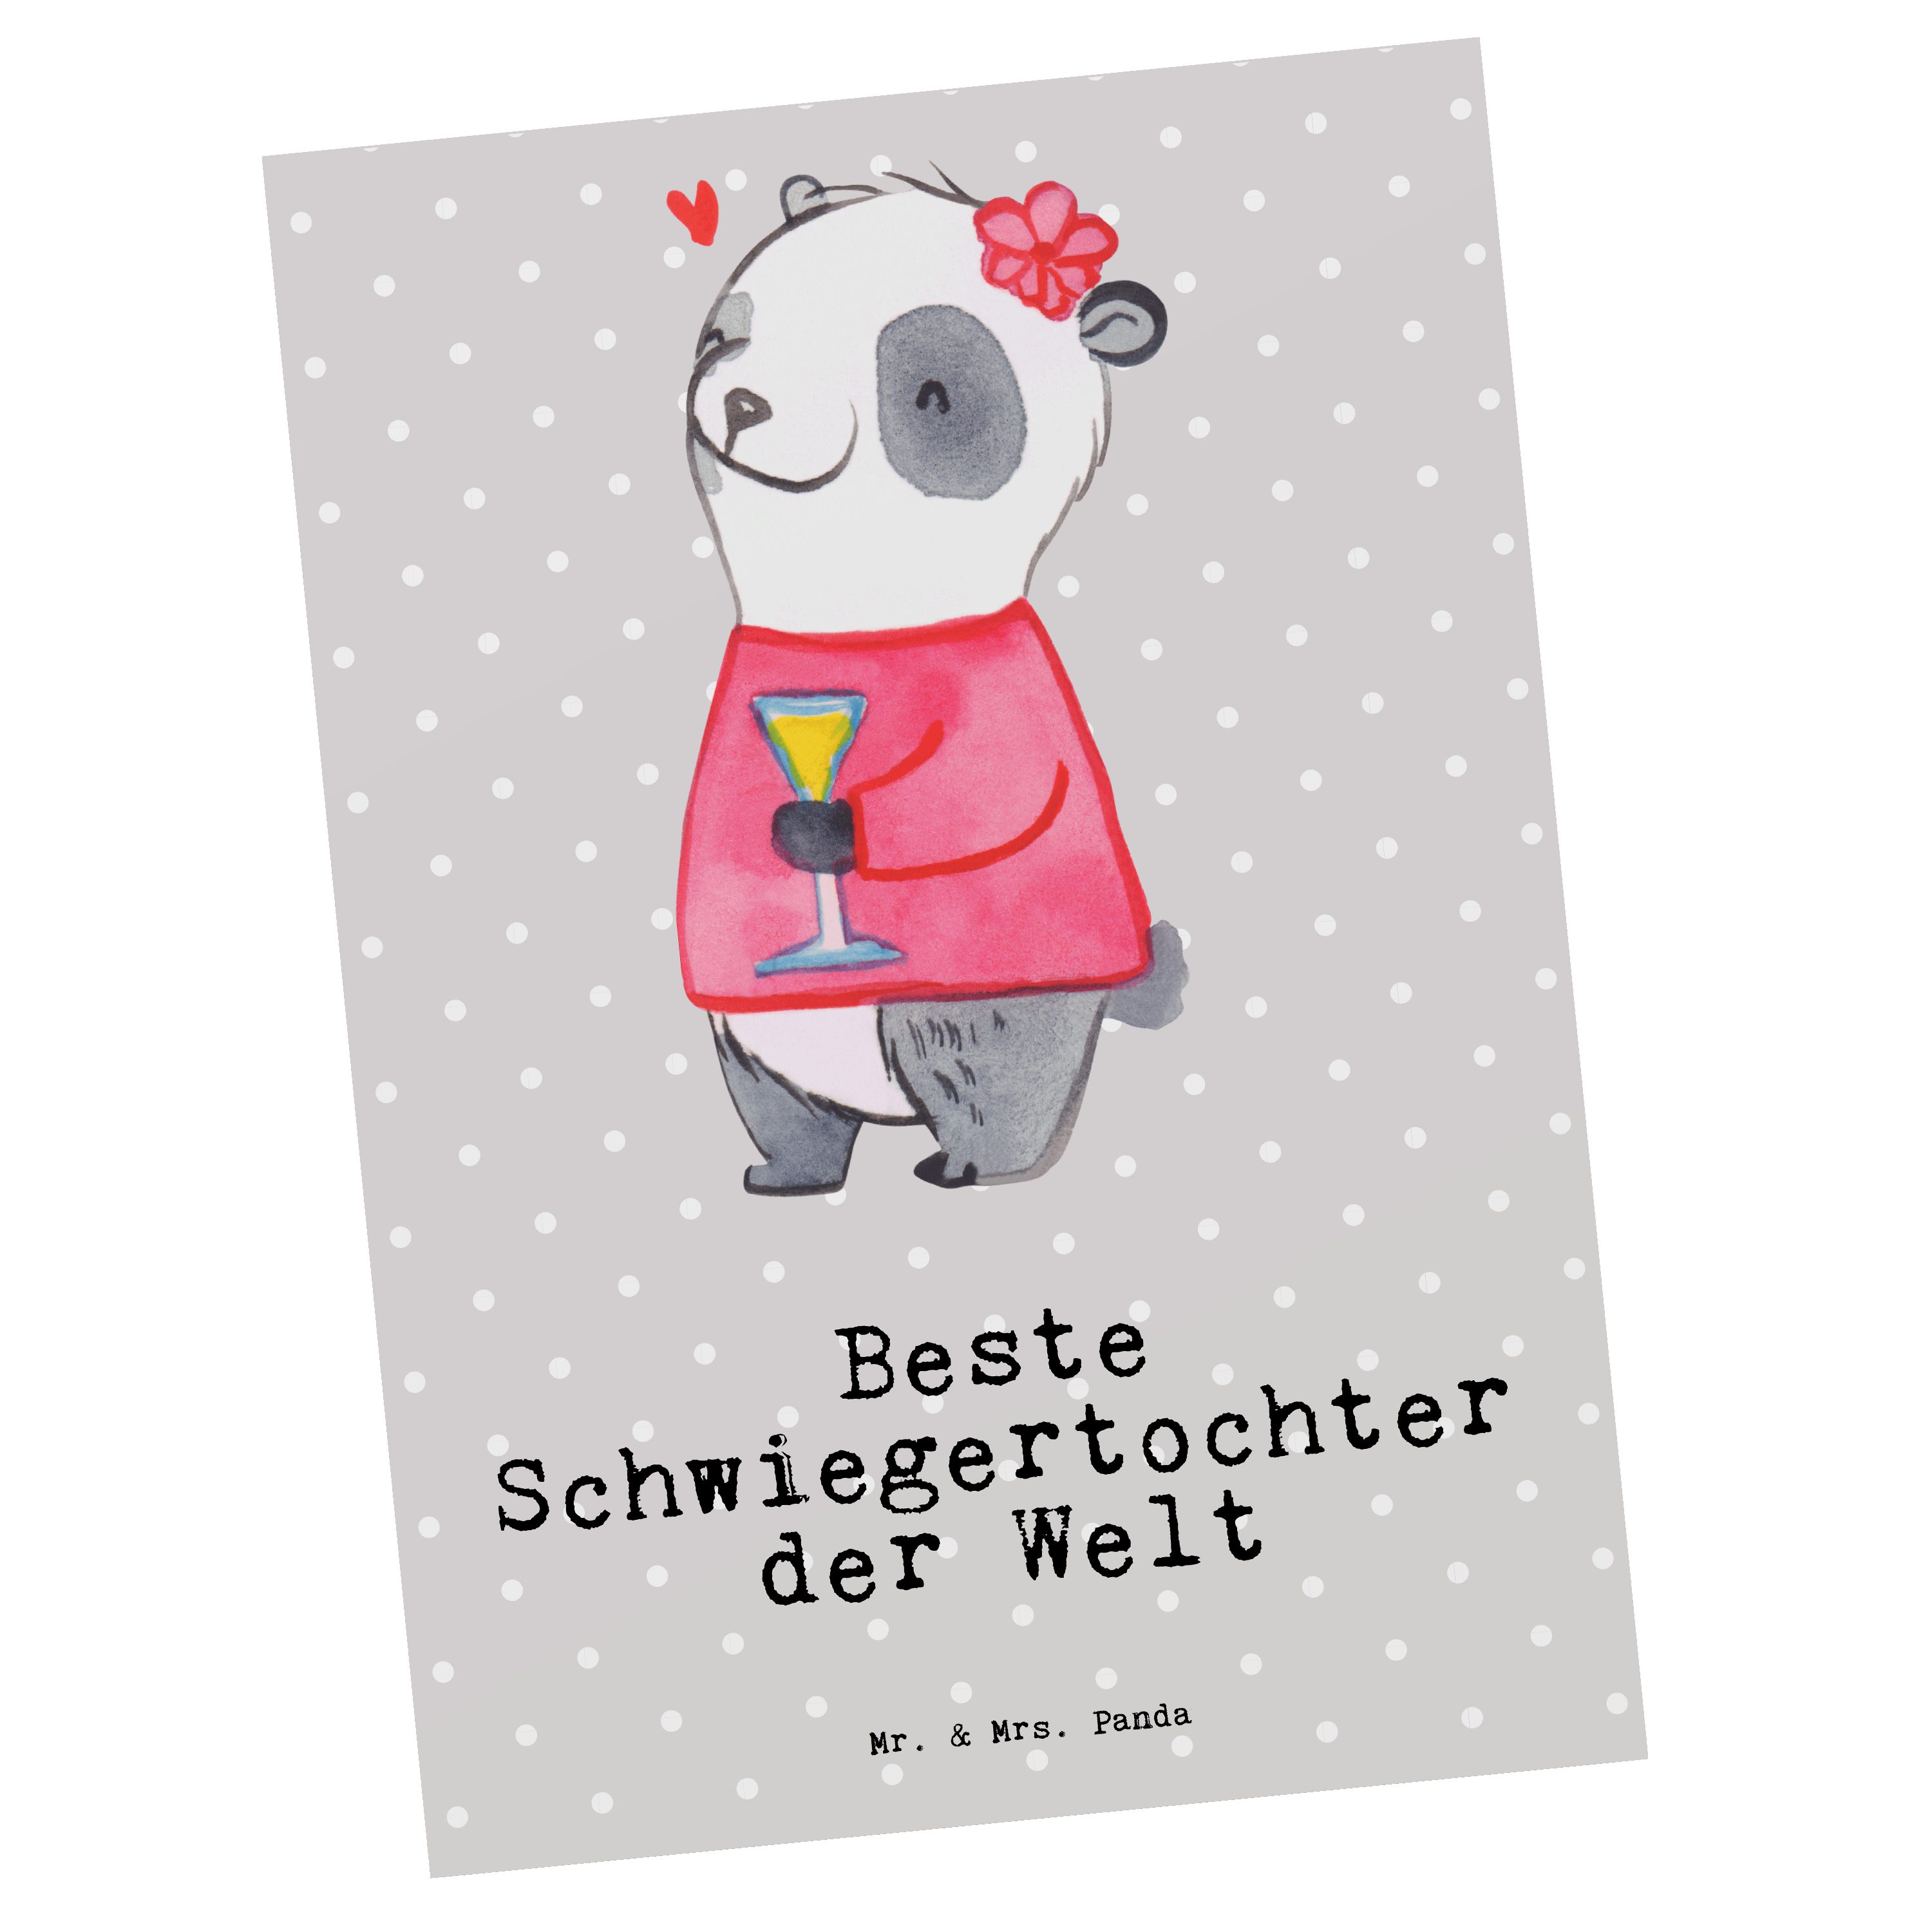 Schwiegertochter Panda Beste Panda - Dank Geschenk, Welt Postkarte Grau Pastell Mrs. - & der Mr.